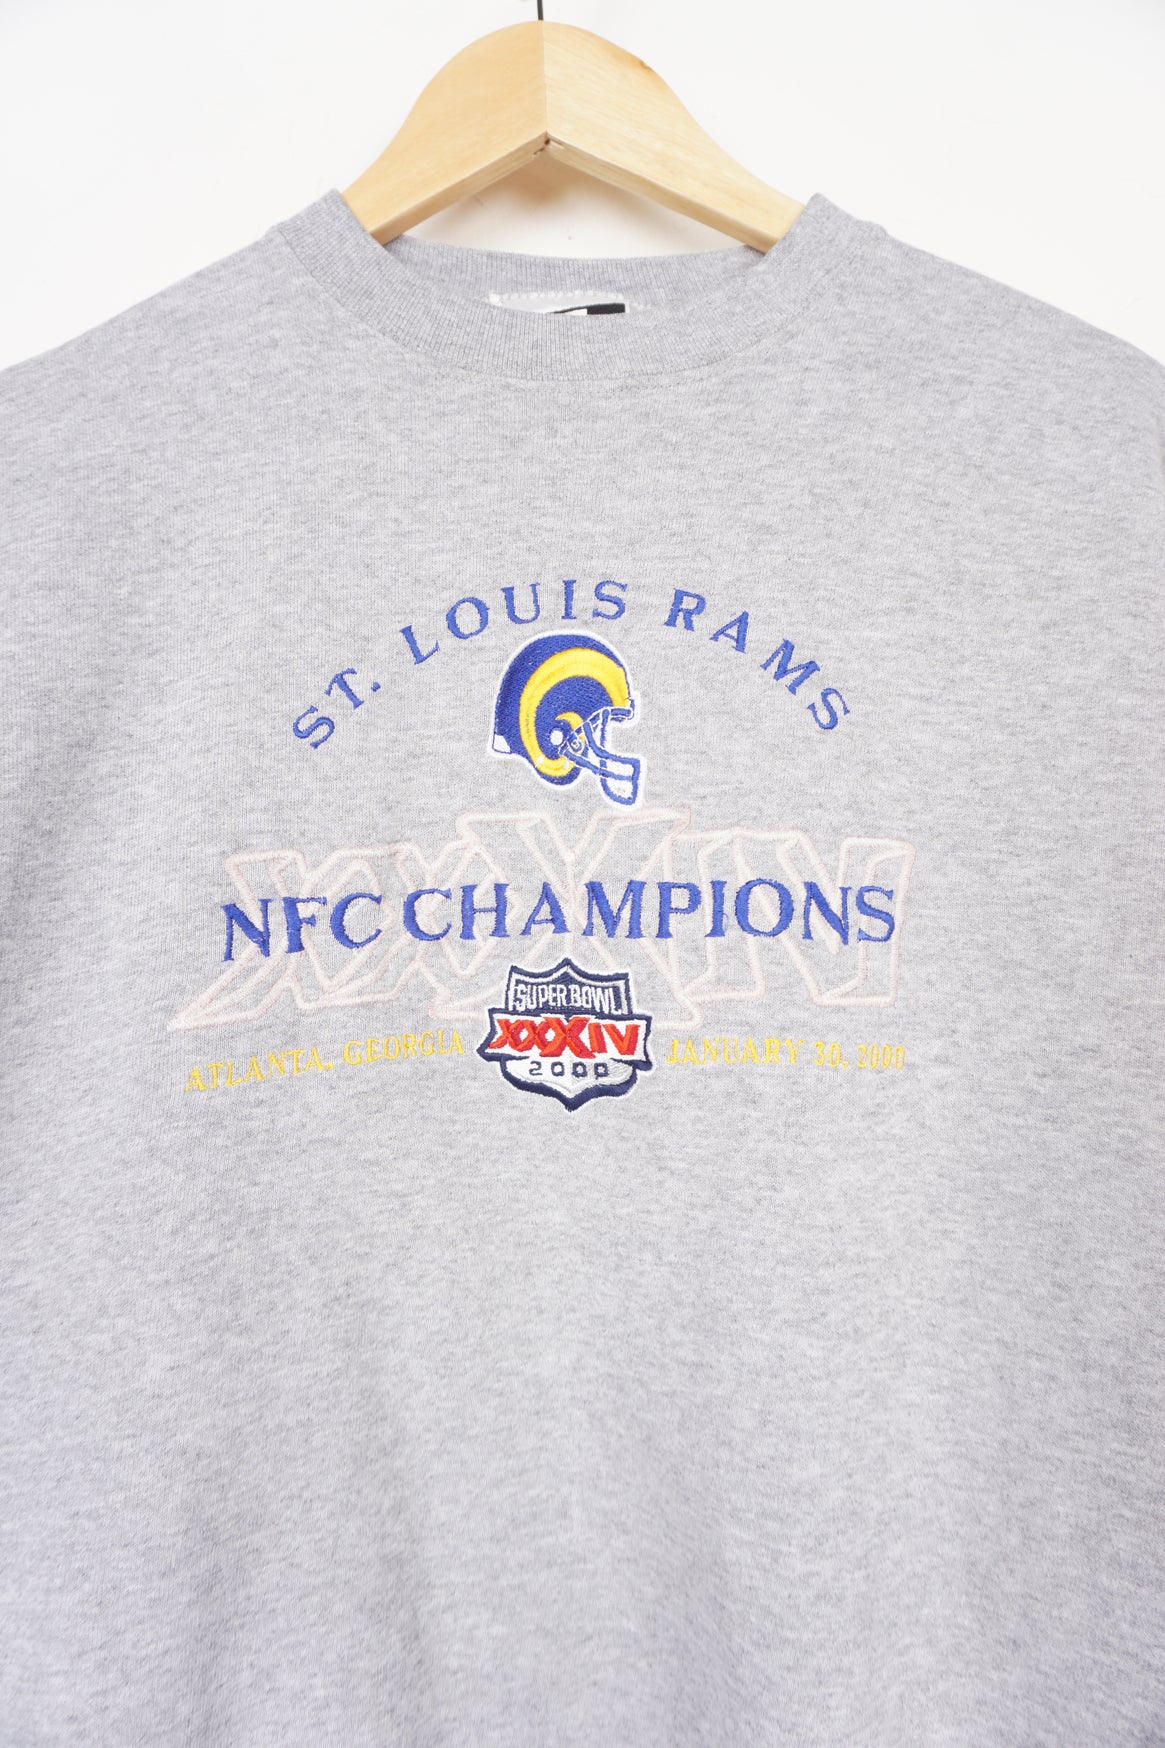 St. Louis Rams Super Bowl Sweatshirt – VintageFolk